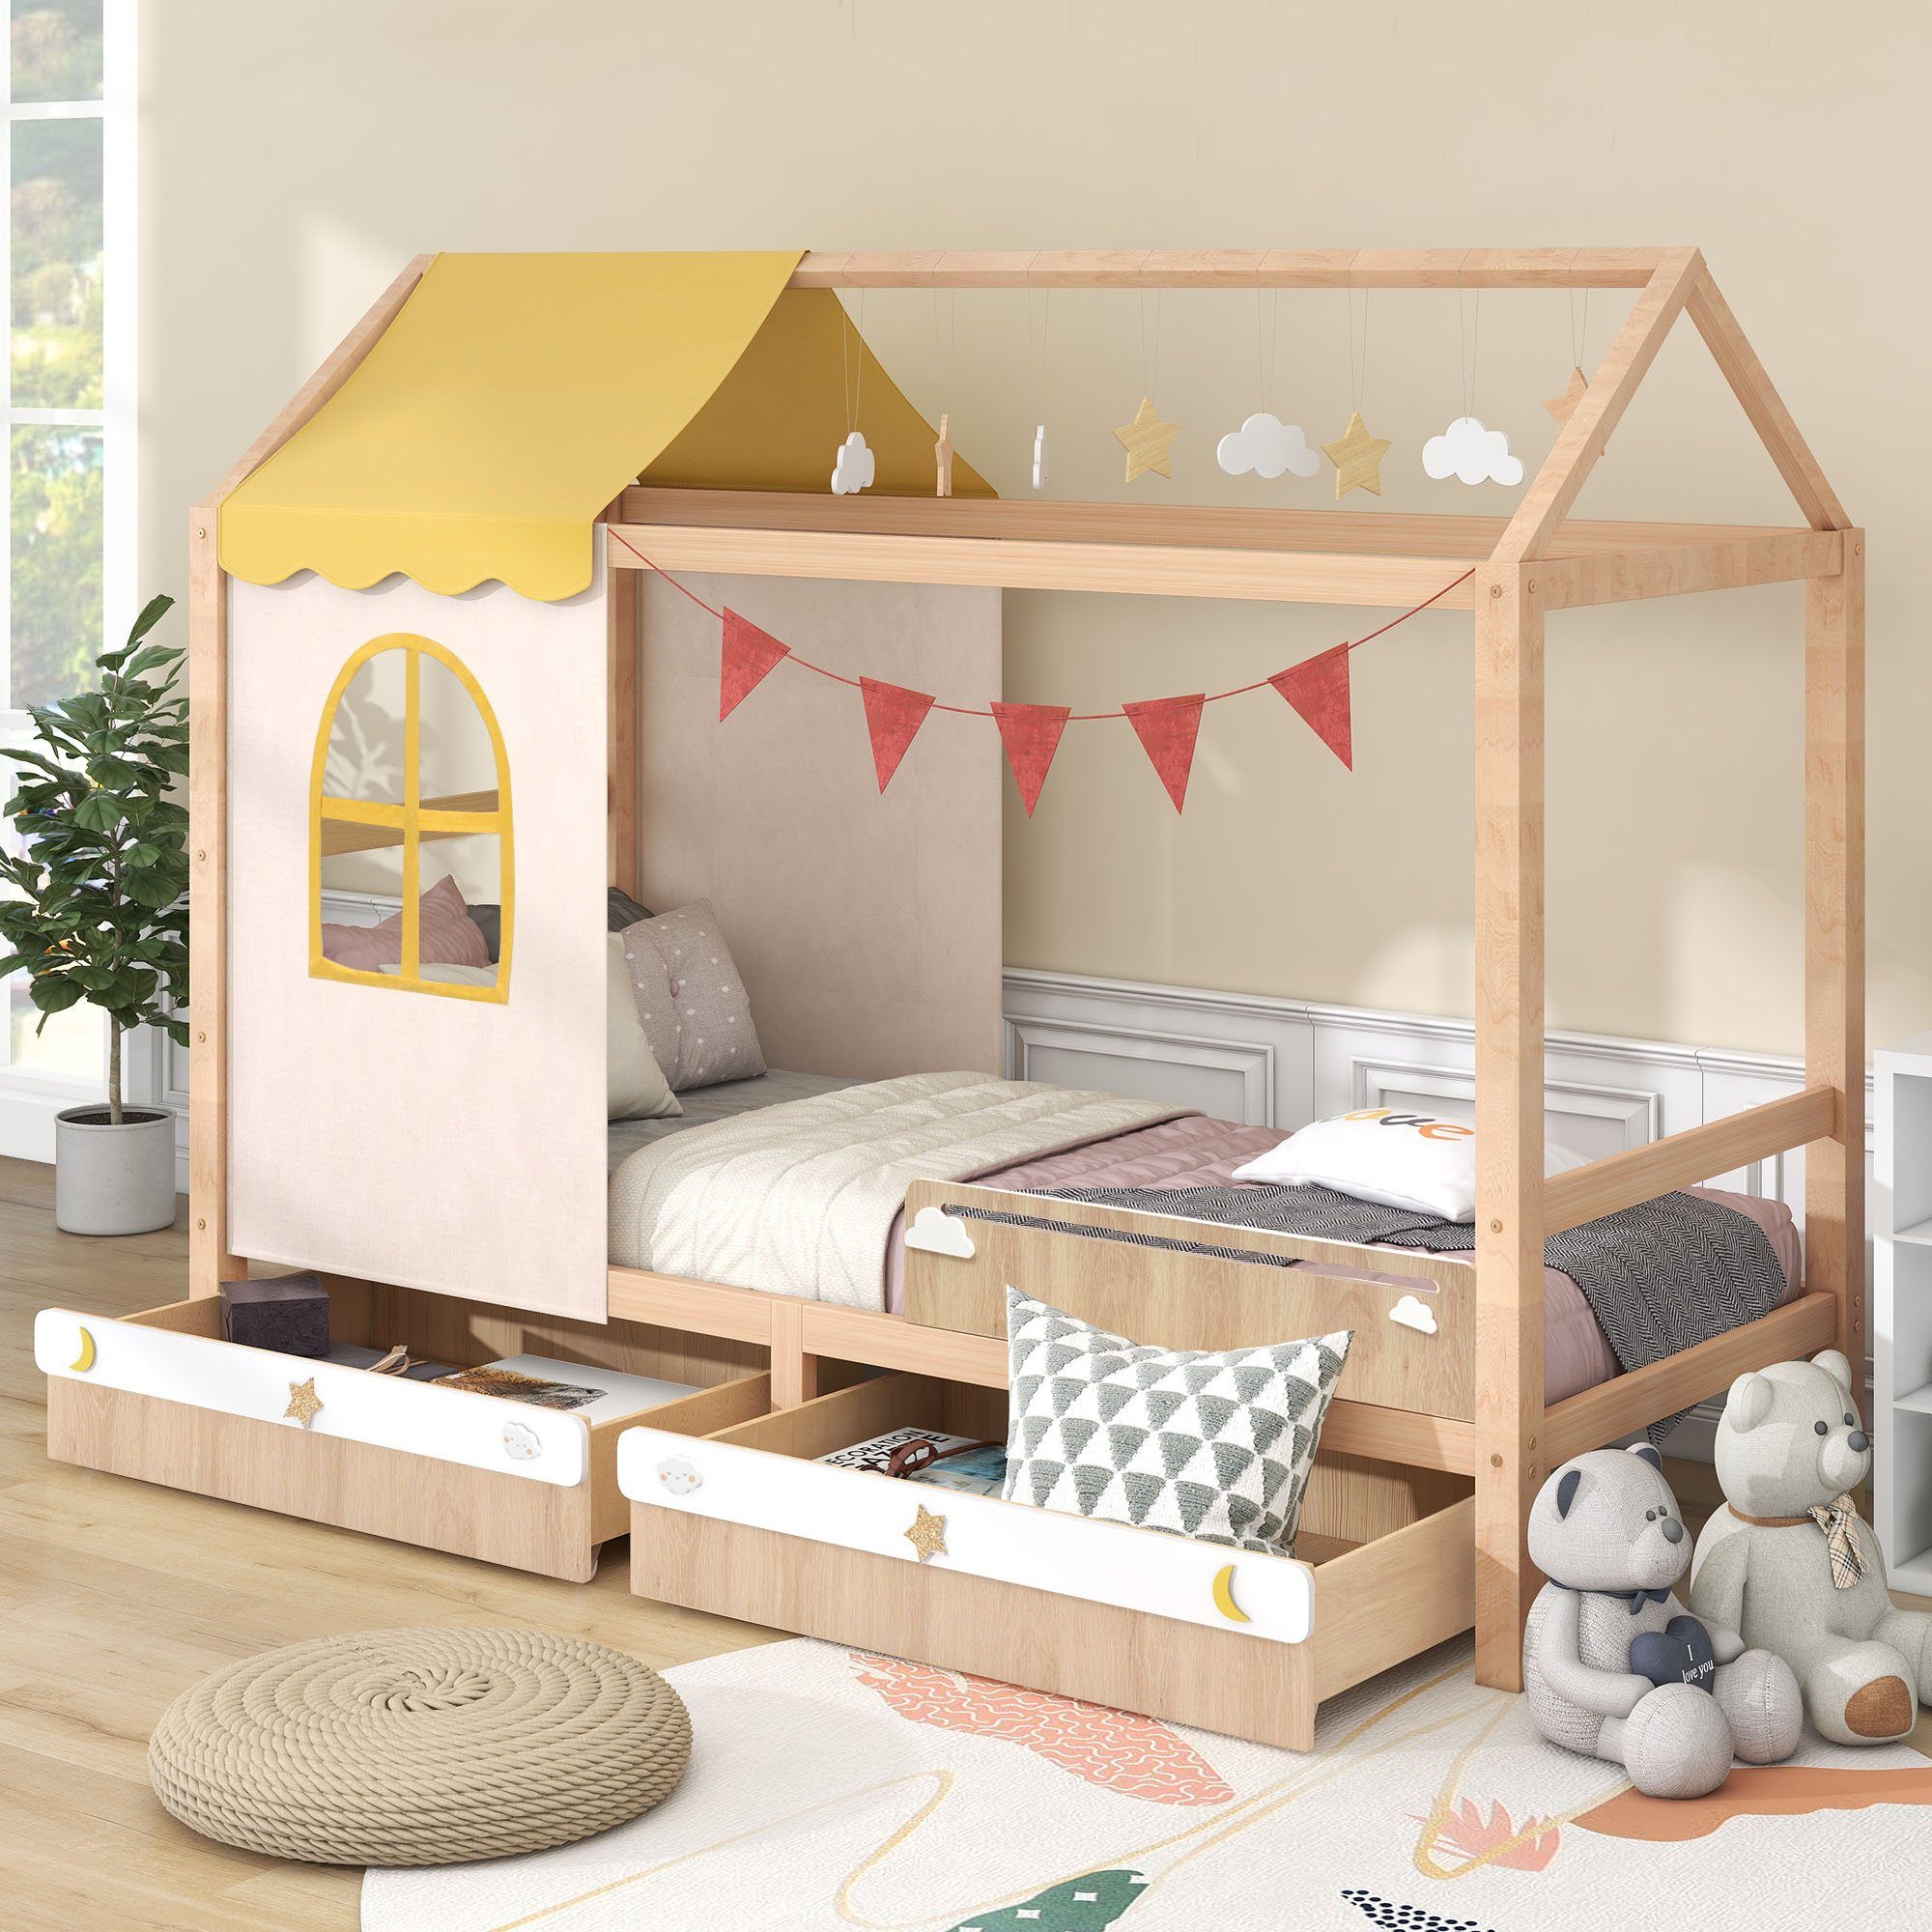 Flieks Kinderbett, Hausbett mit Dekoration und 2 Schubladen Kiefer 90x200cm